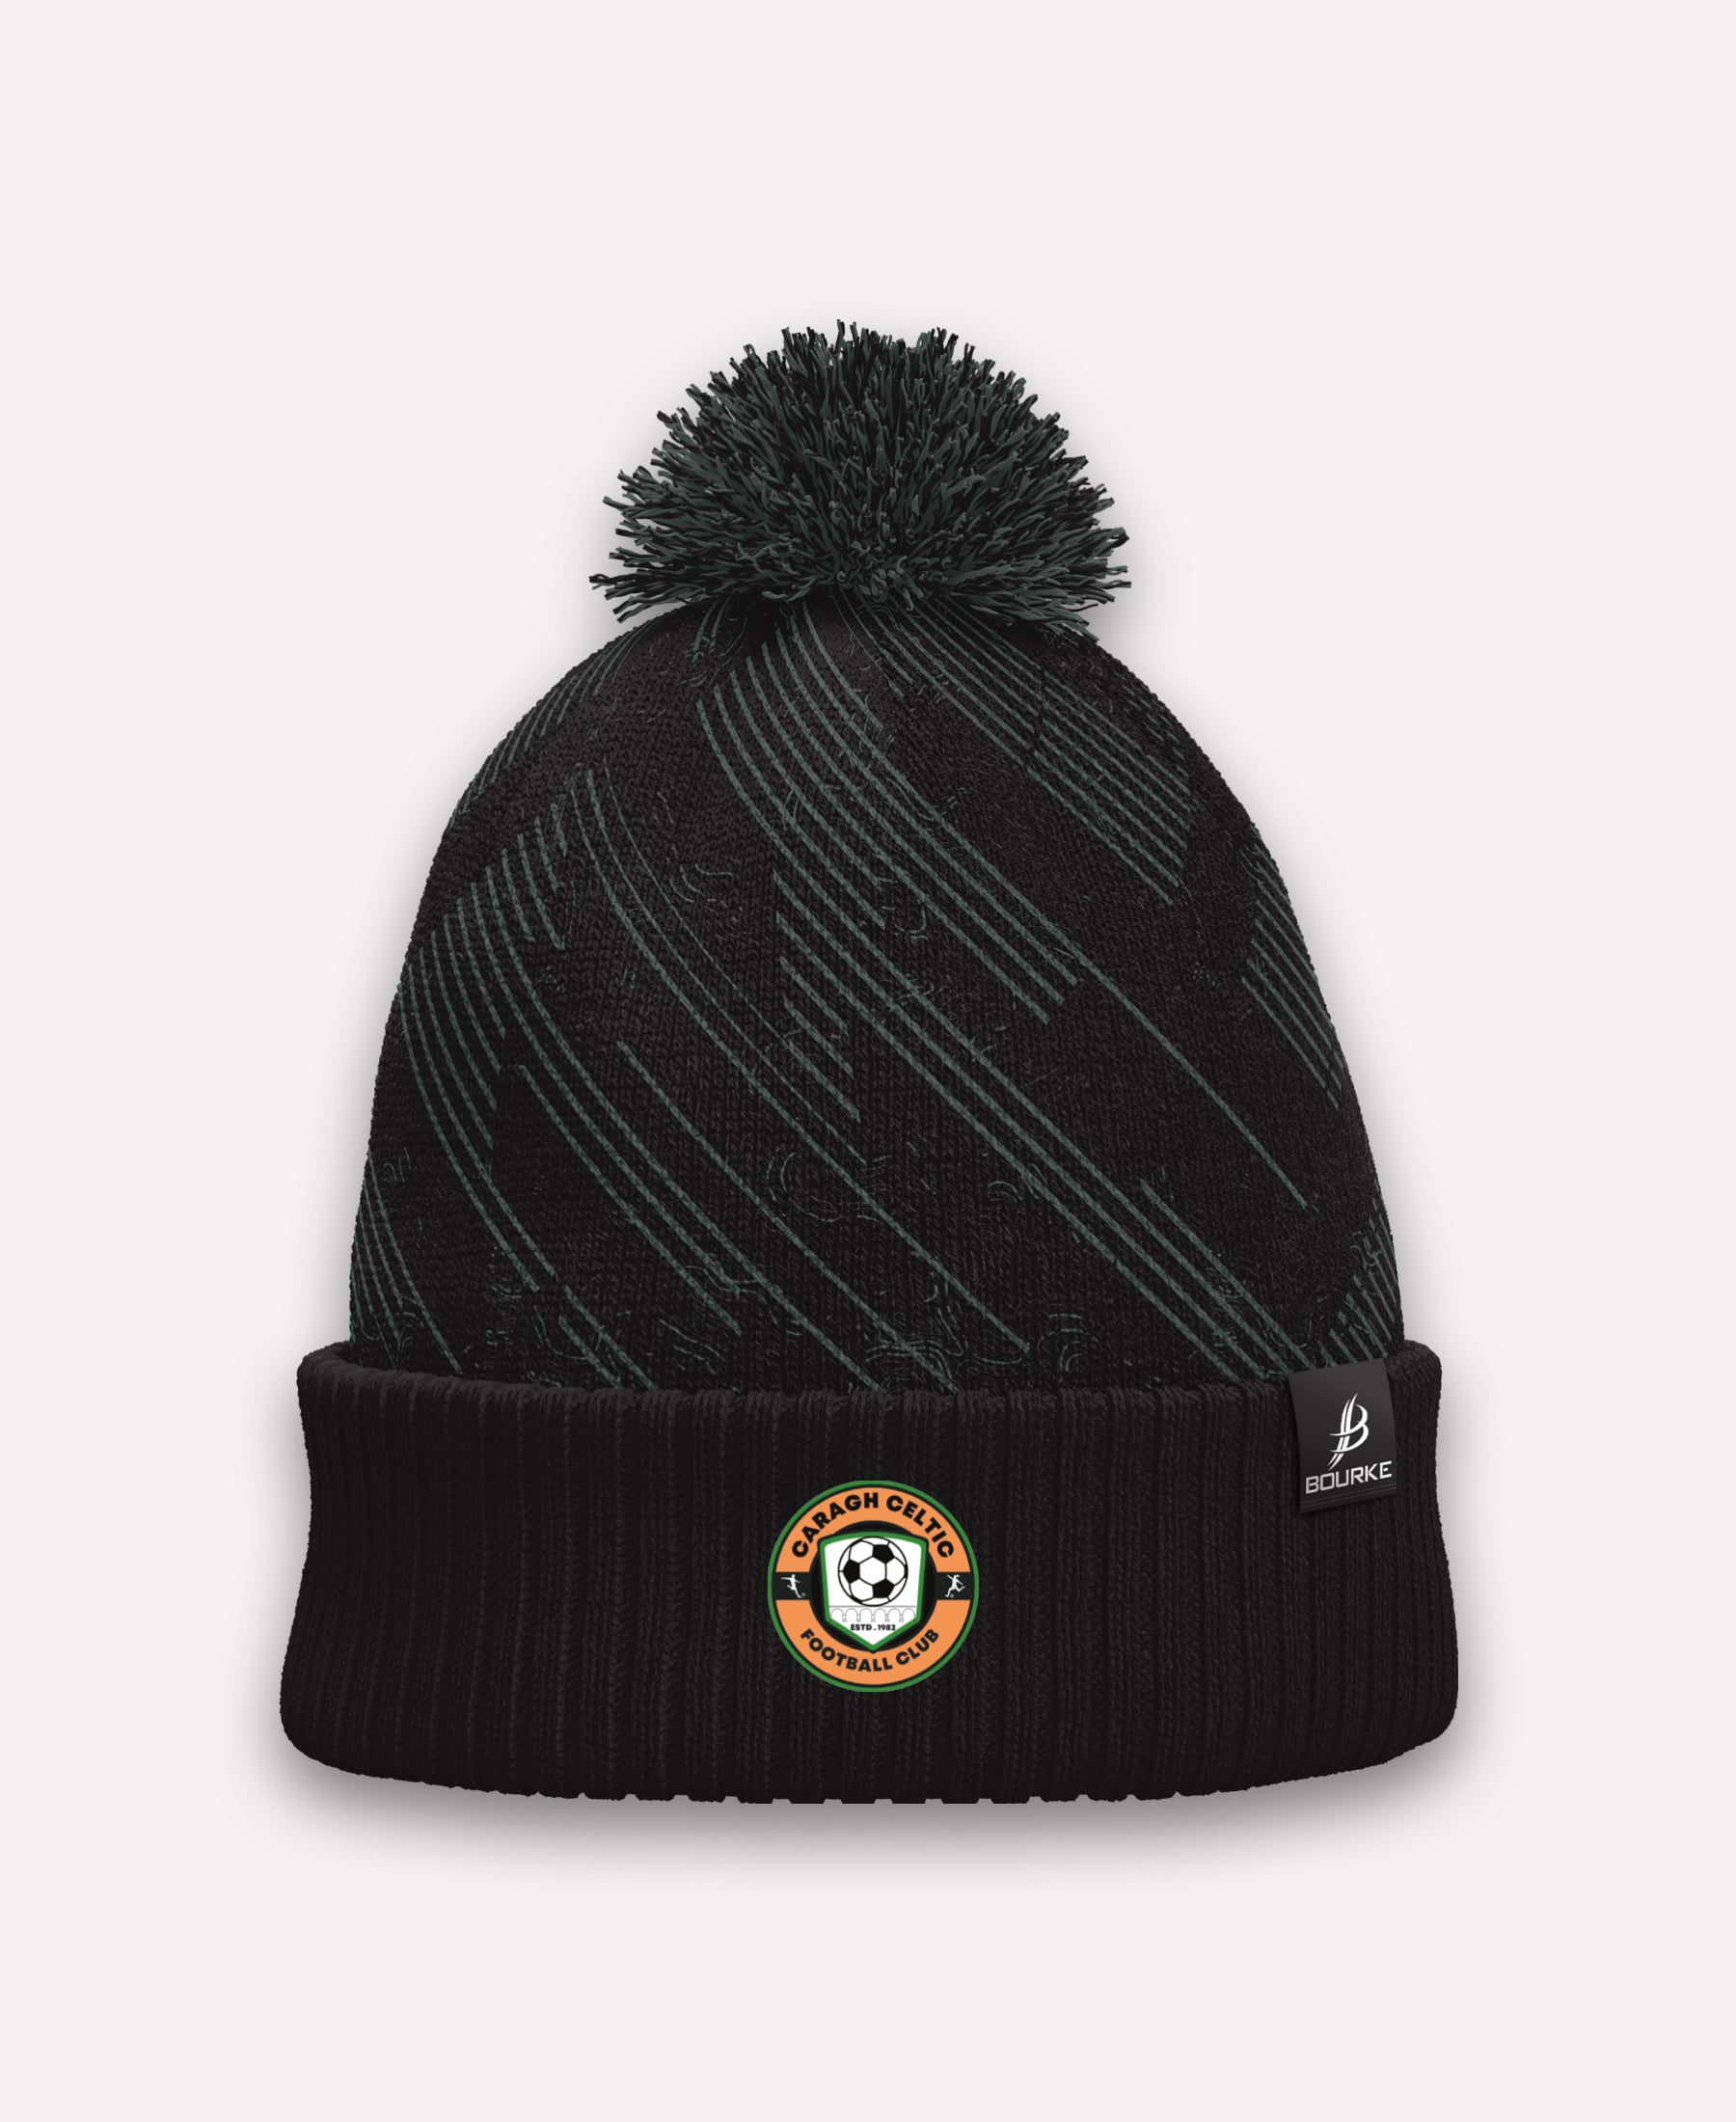 Caragh Celtic FC BARR Bobble Hat (Black/Grey)